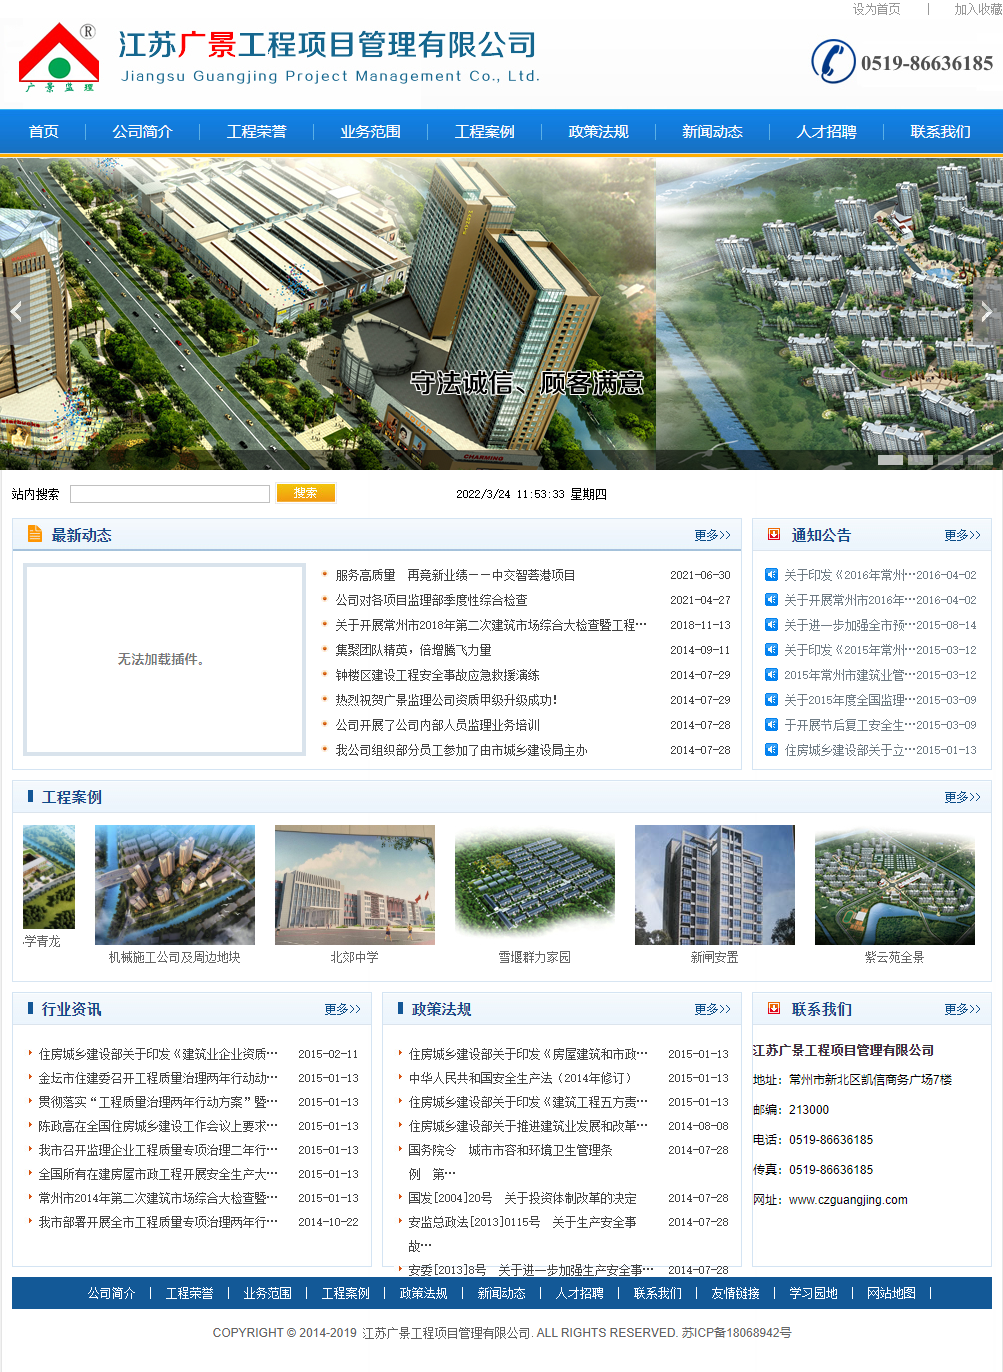 江苏广景工程项目管理有限公司网站案例